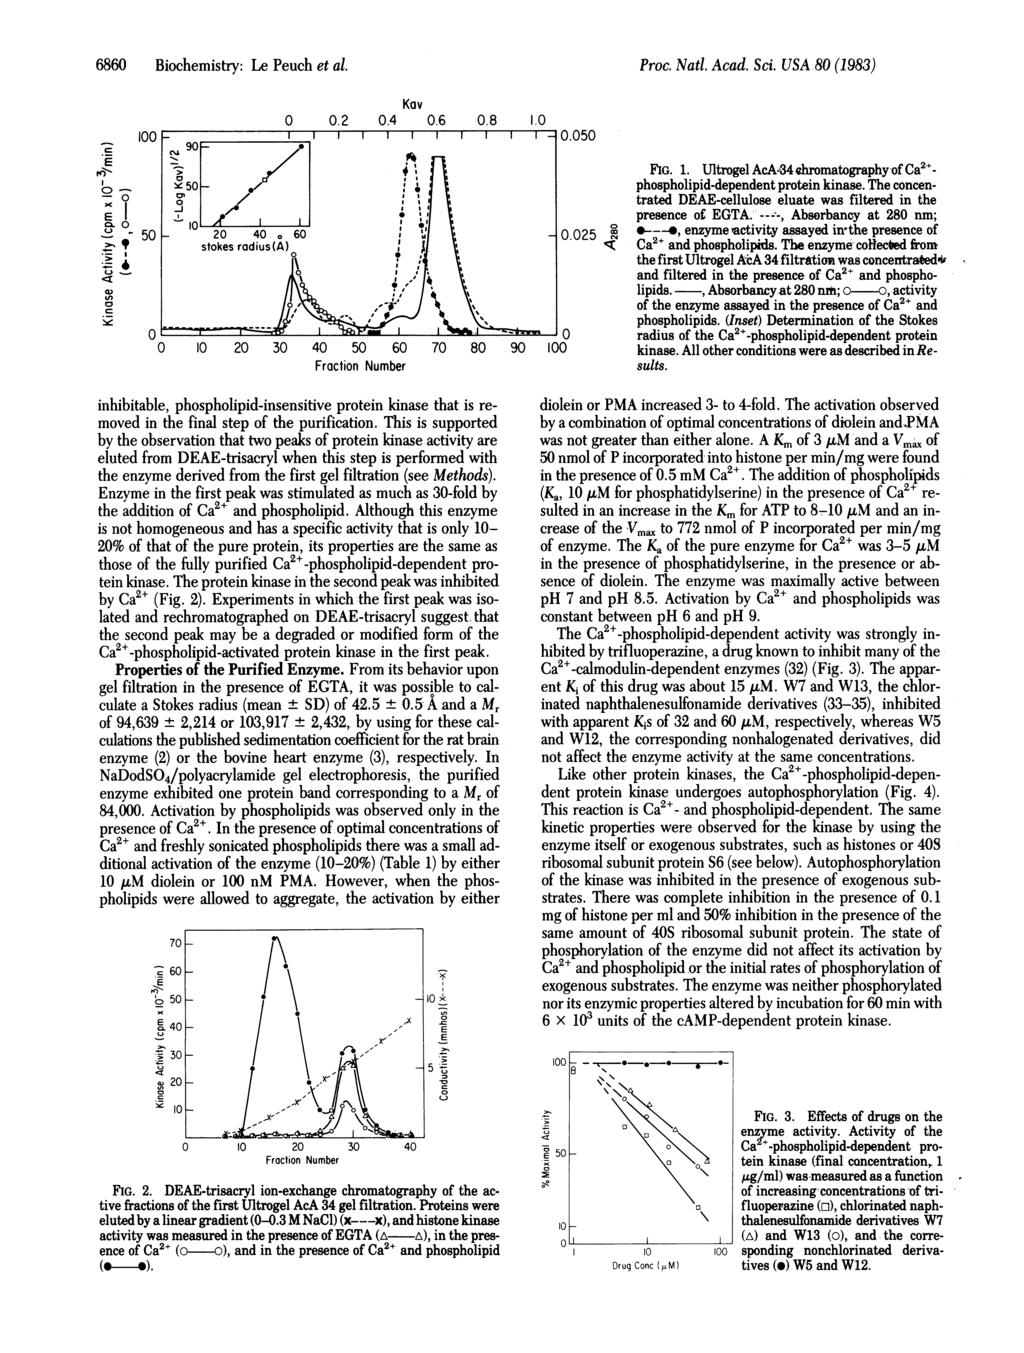 6860 Biochemistry: Le Peuch et al. Proc. Natl. Acad. Sci. USA W (1983).E a-a x I CJ ca.) 0 i CJ cn.a Byc 100 5-50 Kav 0 0.2 0.4 0.6 0.8 1.0 0 10 20 30 40 50 60 Fraction Number _.